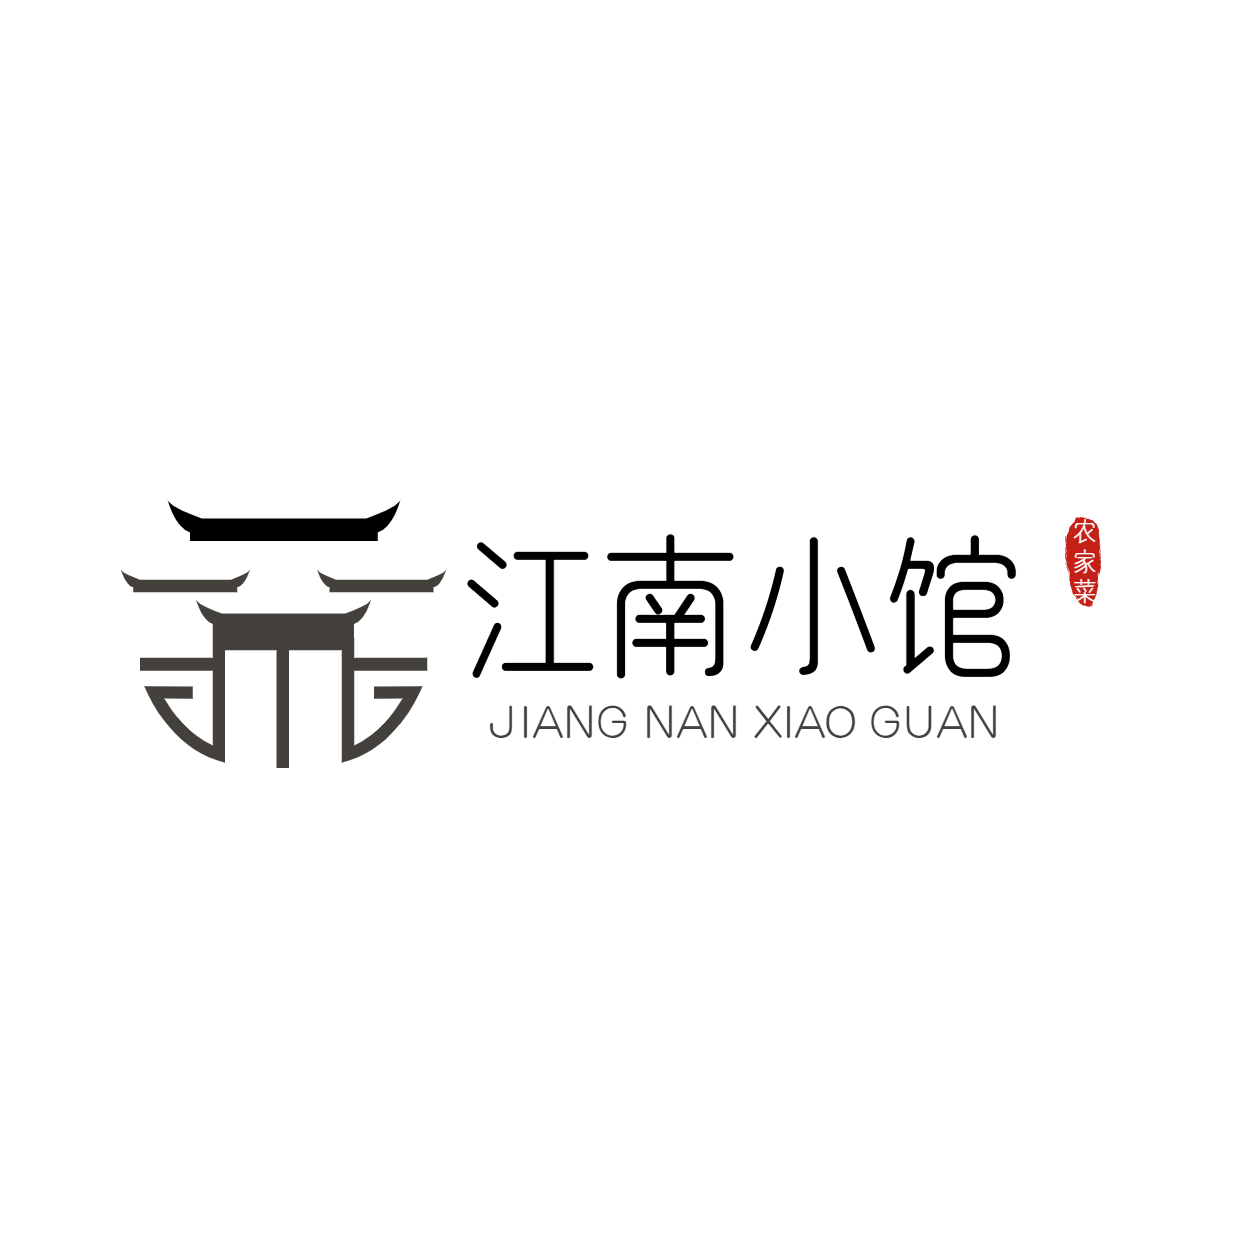 中餐正餐品牌宣传LOGO简约微信头像